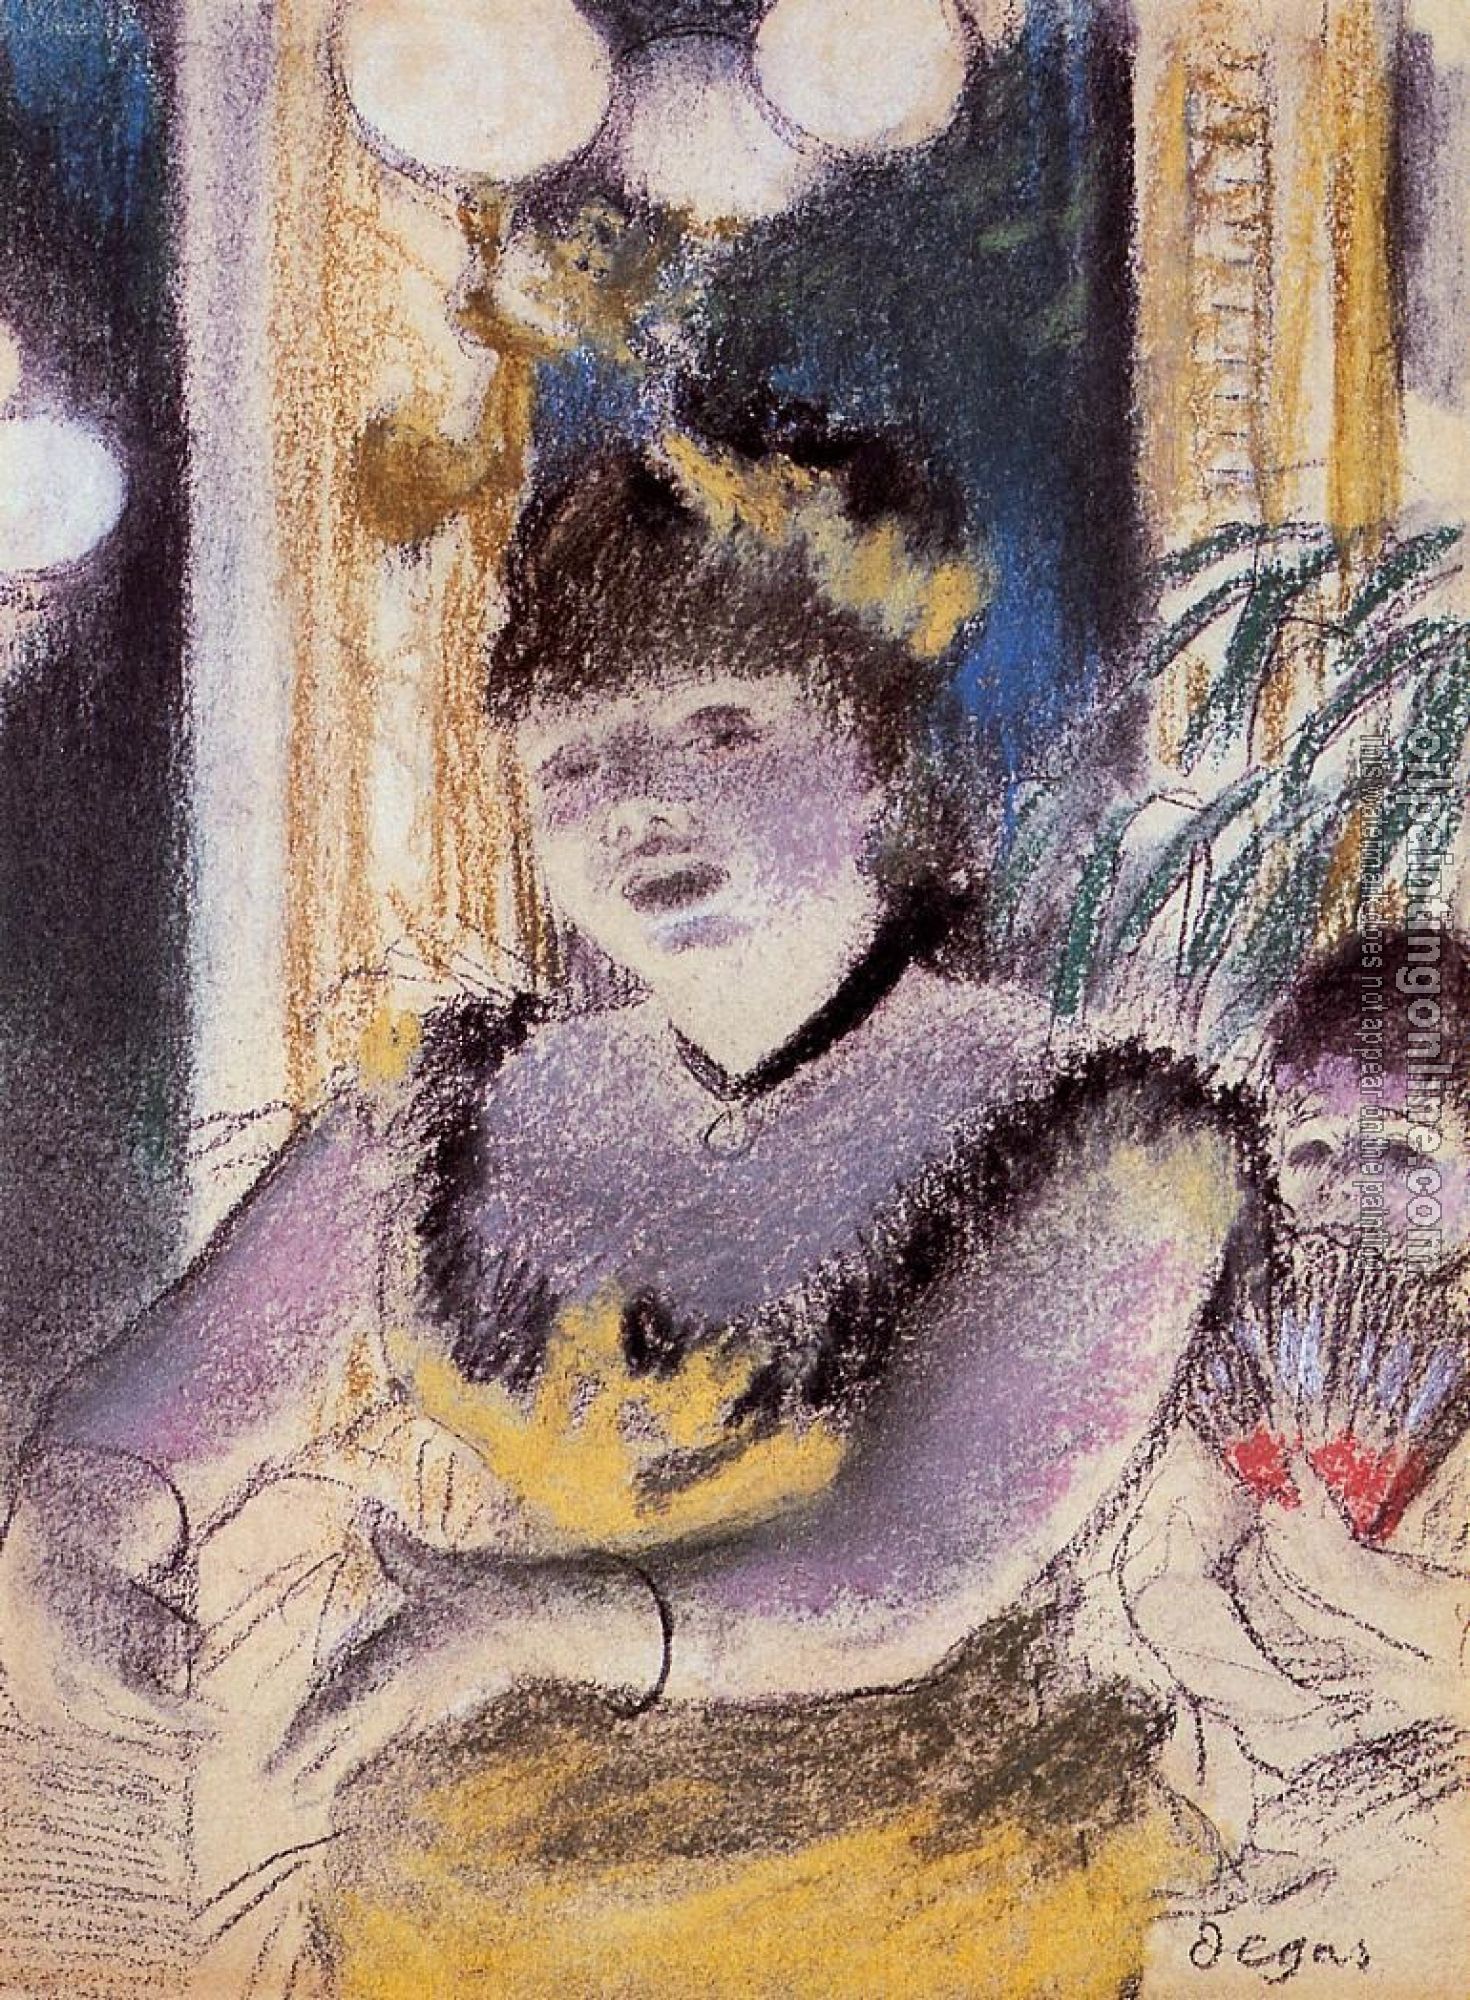 Degas, Edgar - Cafe Concert Singer